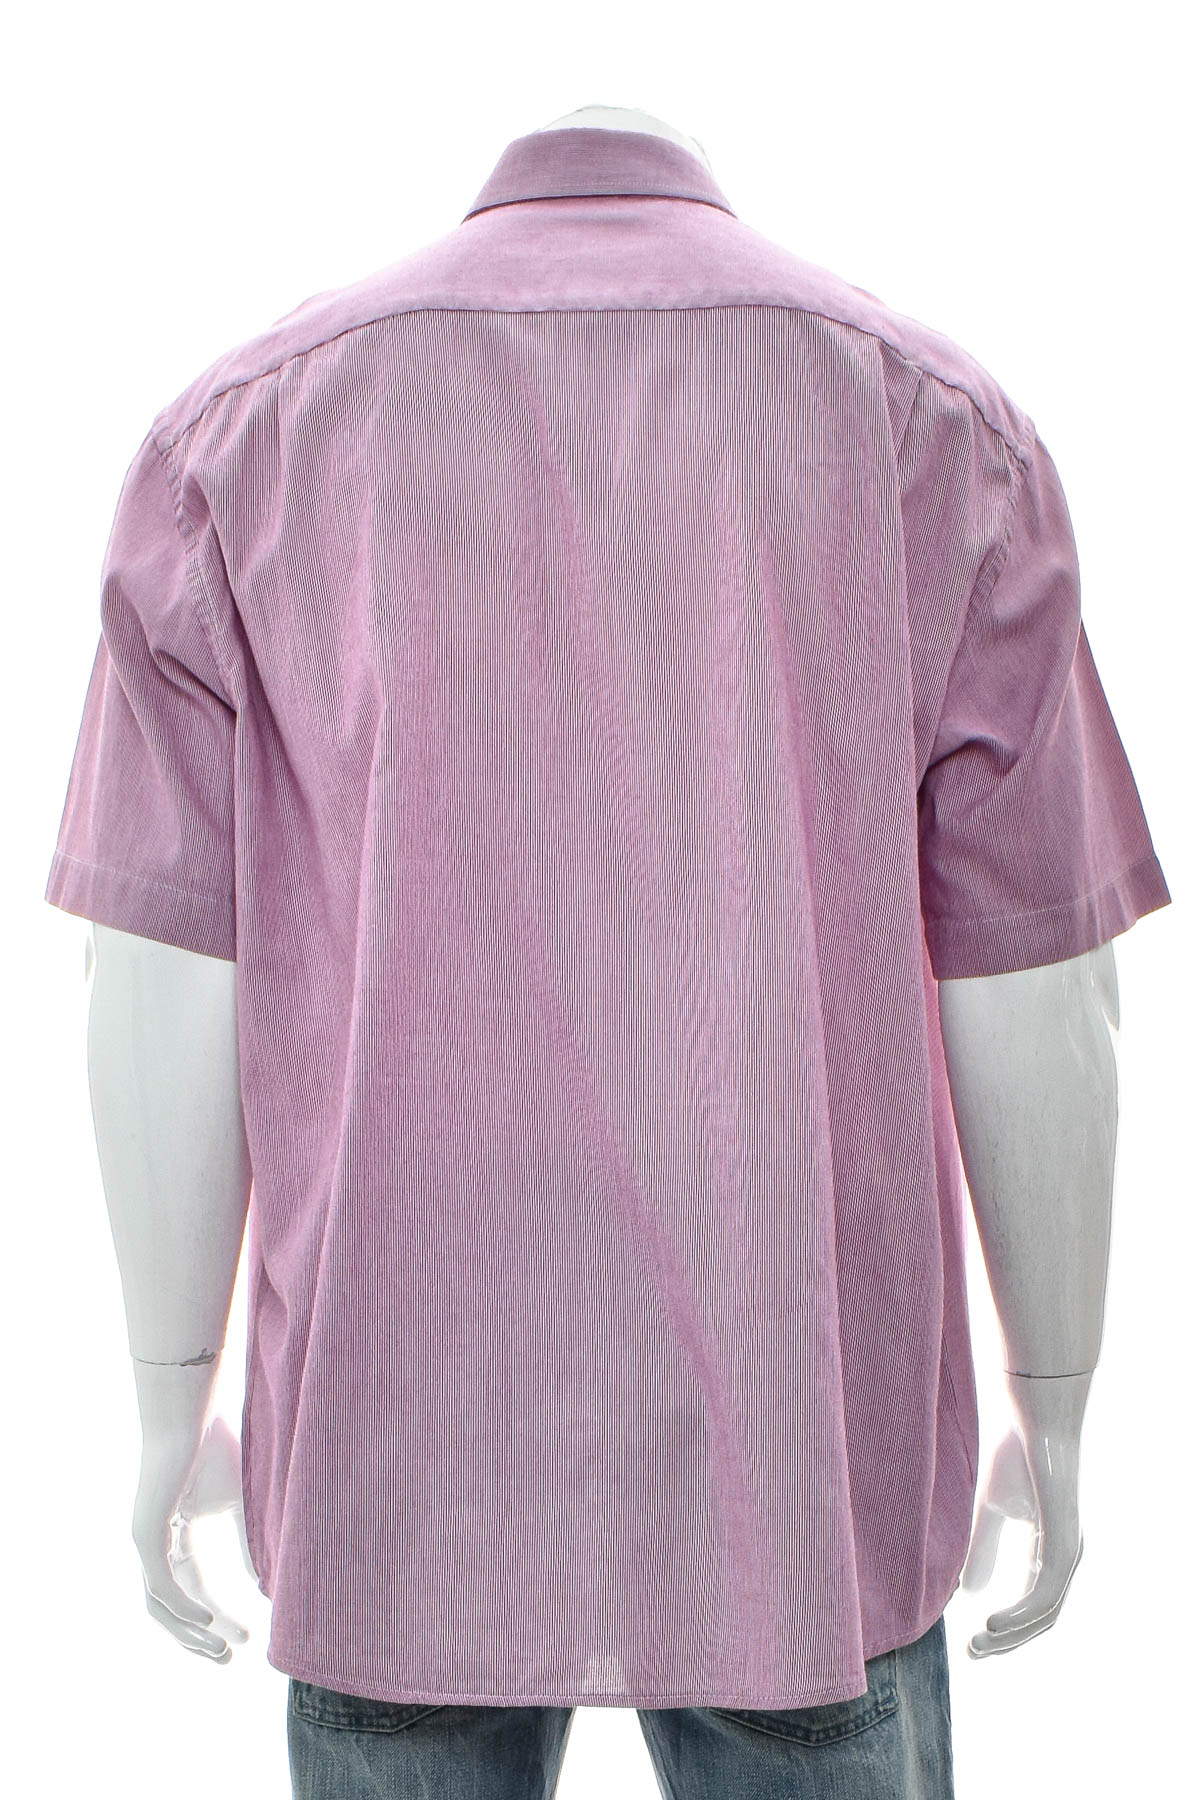 Ανδρικό πουκάμισο - Seidensticker - 1